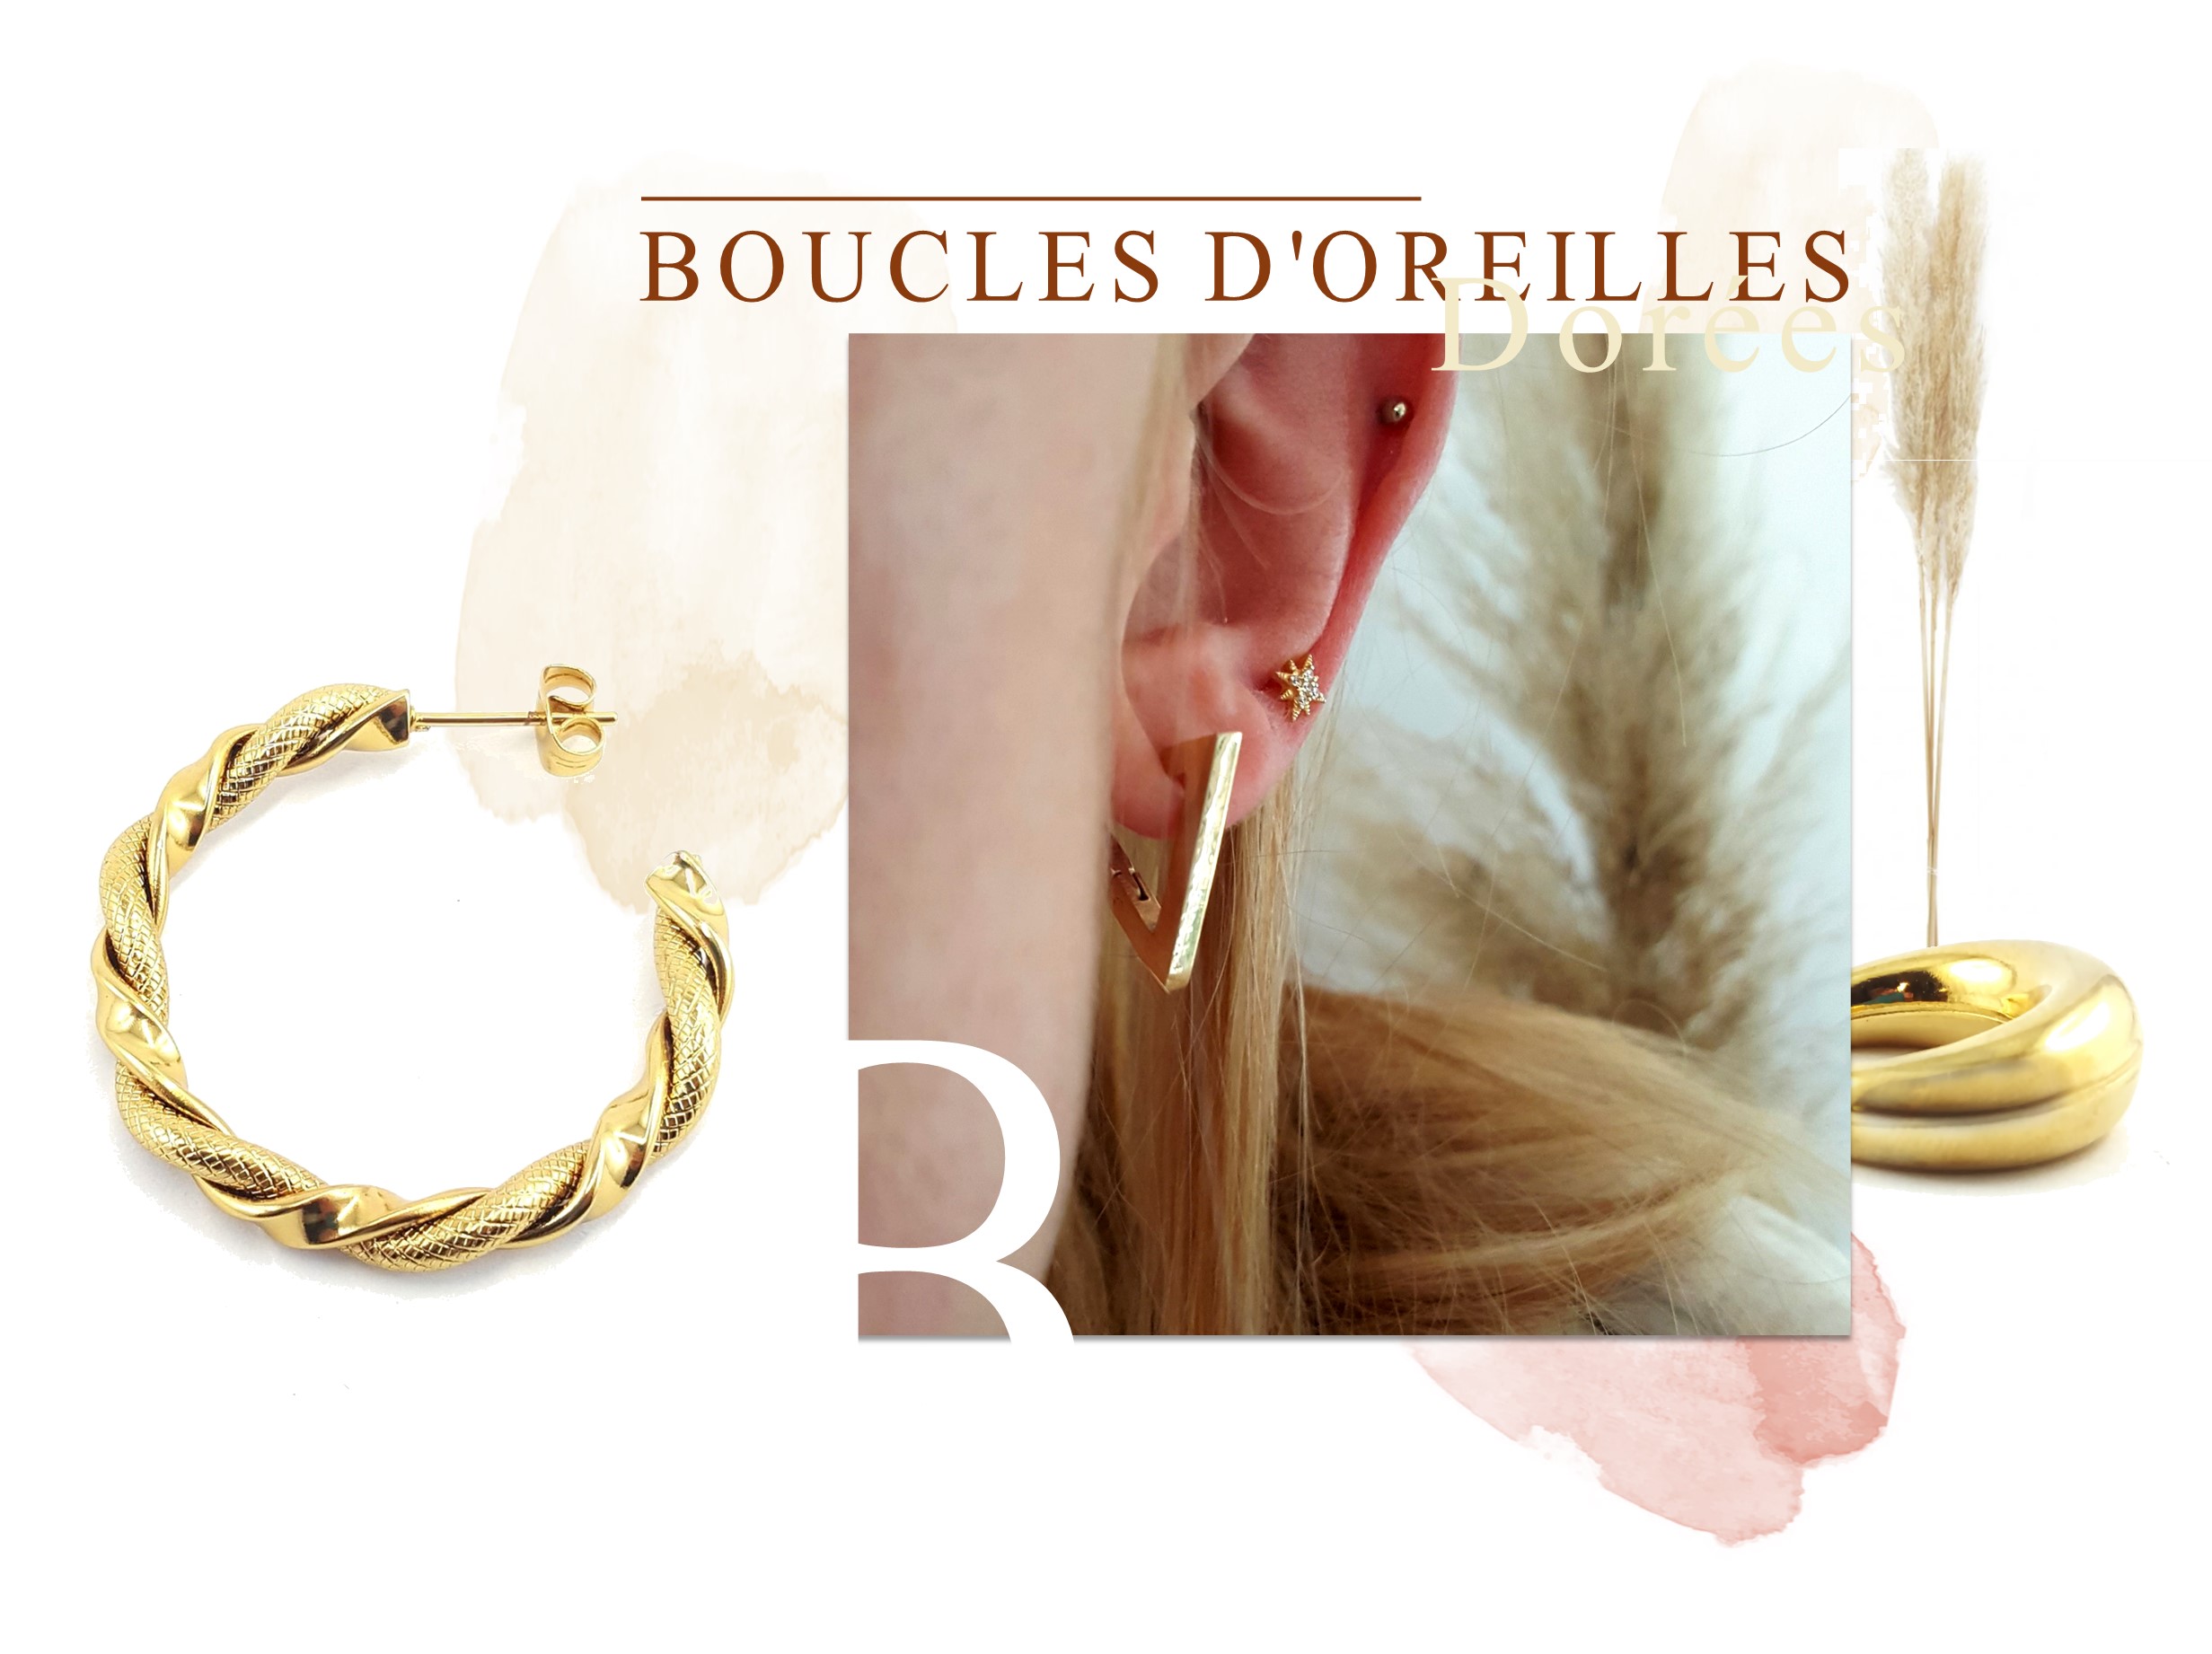 Les boucles d'oreilles dorées - Identités bijoux - Auvergne - Puy de Dôme - France